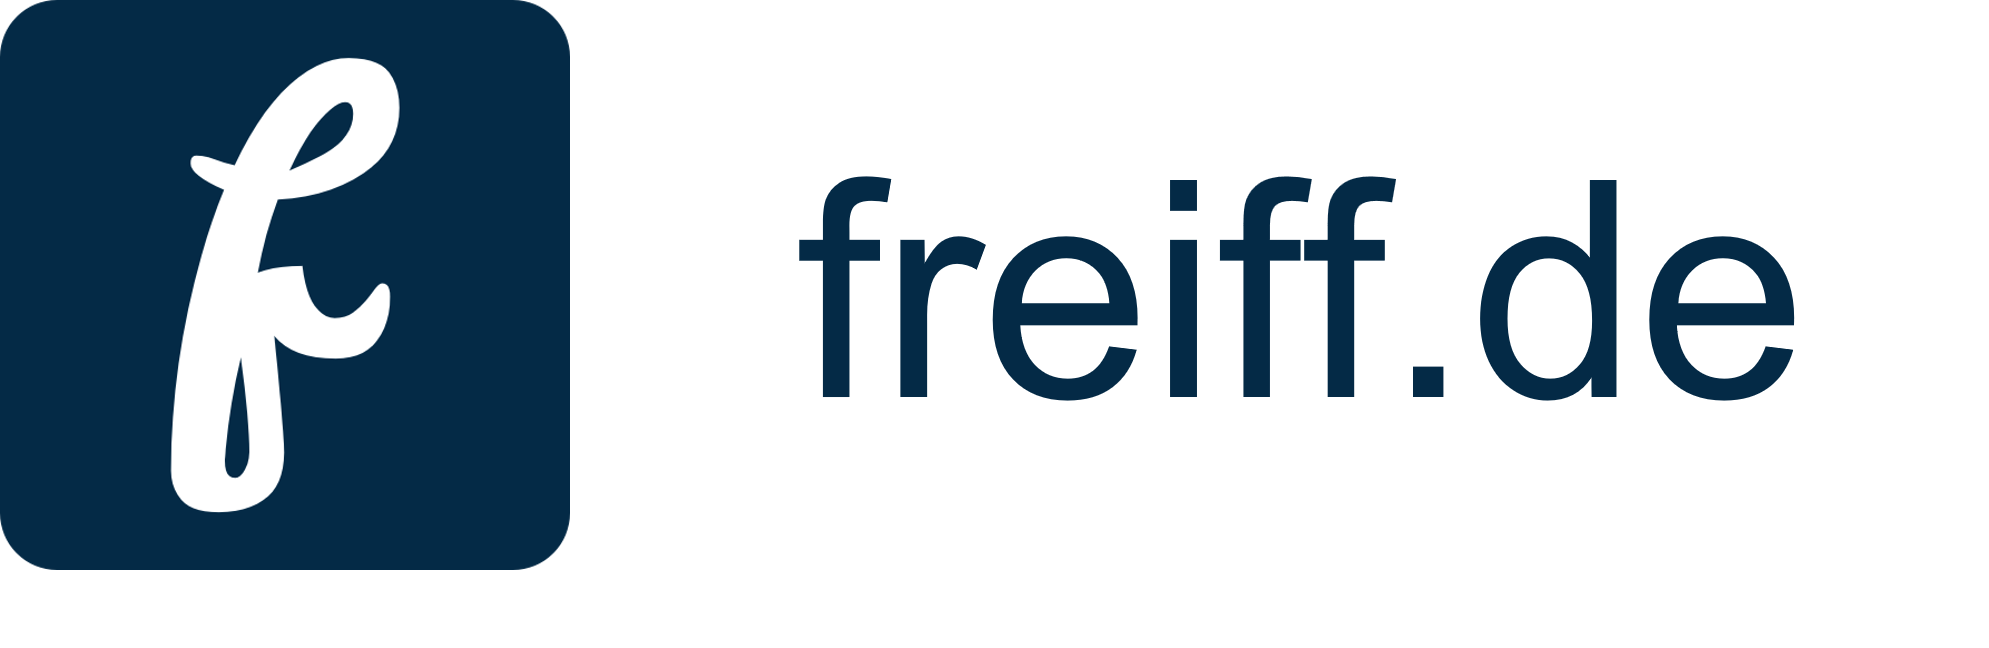 freiff.de Logo Text Frederik Reiff